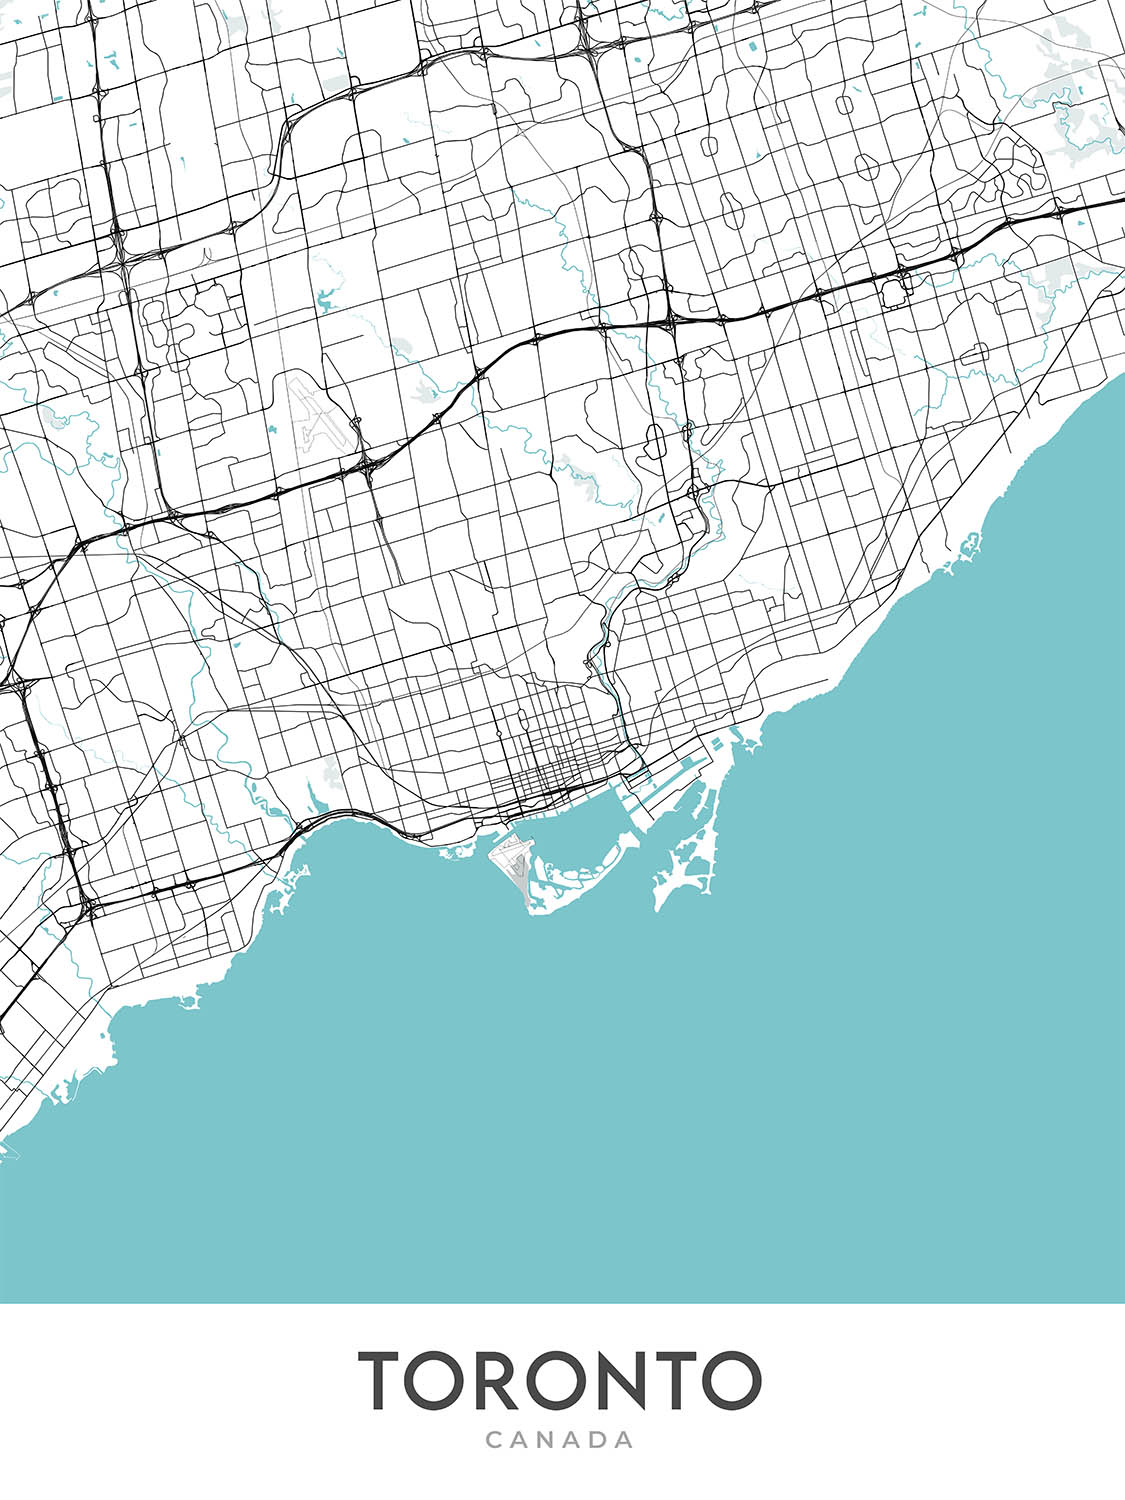 Plan de la ville moderne de Toronto, Canada : Tour CN, centre-ville, marché de Kensington, Musée royal de l'Ontario, îles de Toronto